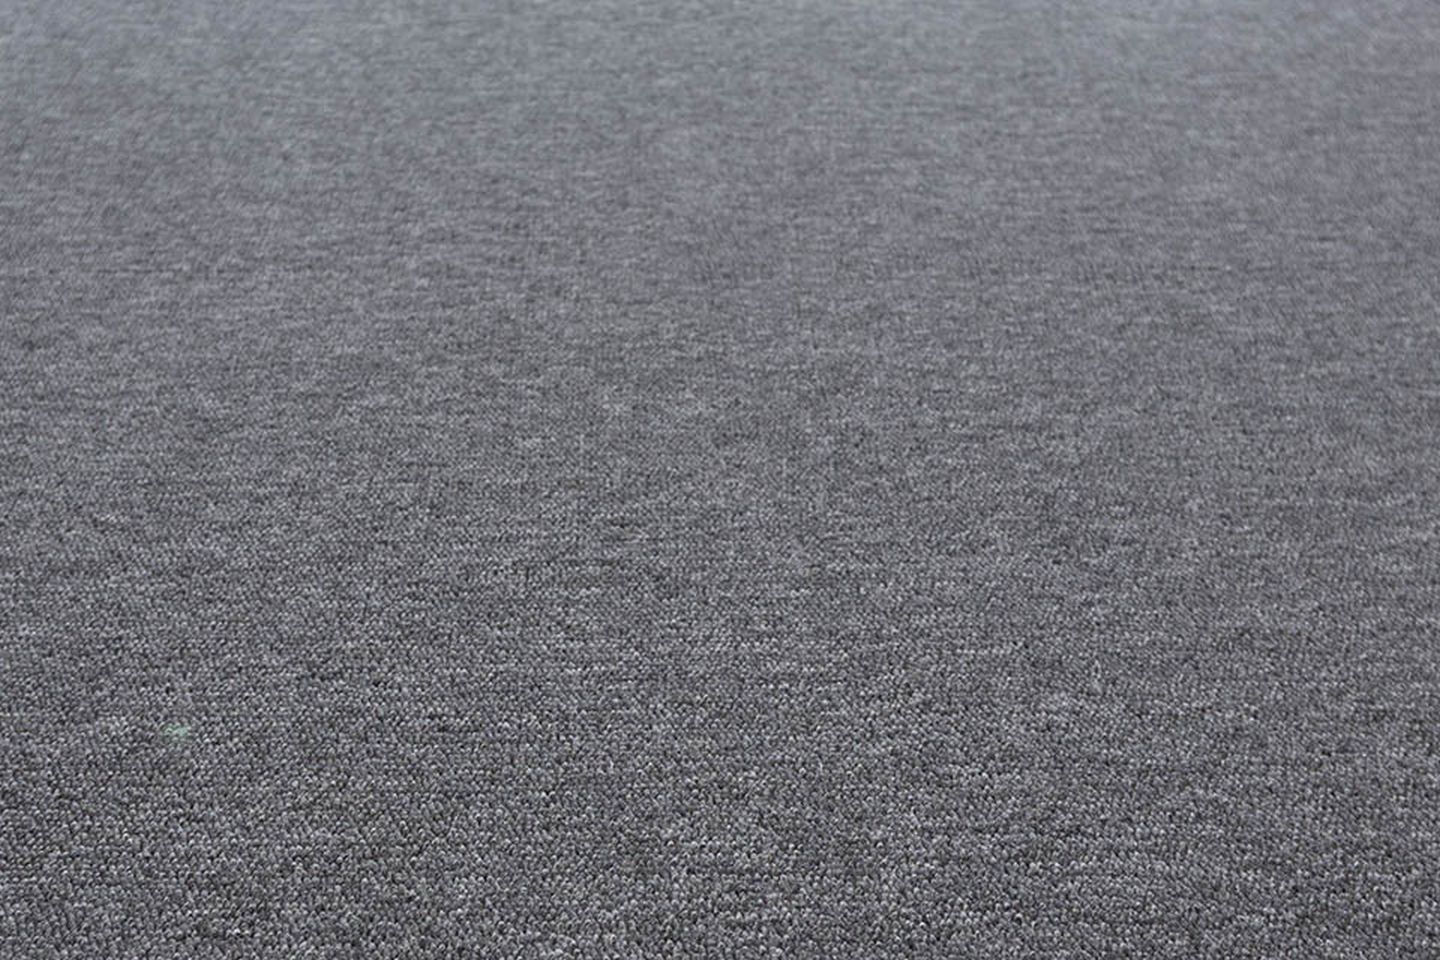 Metrážny koberec PROFIT sivý